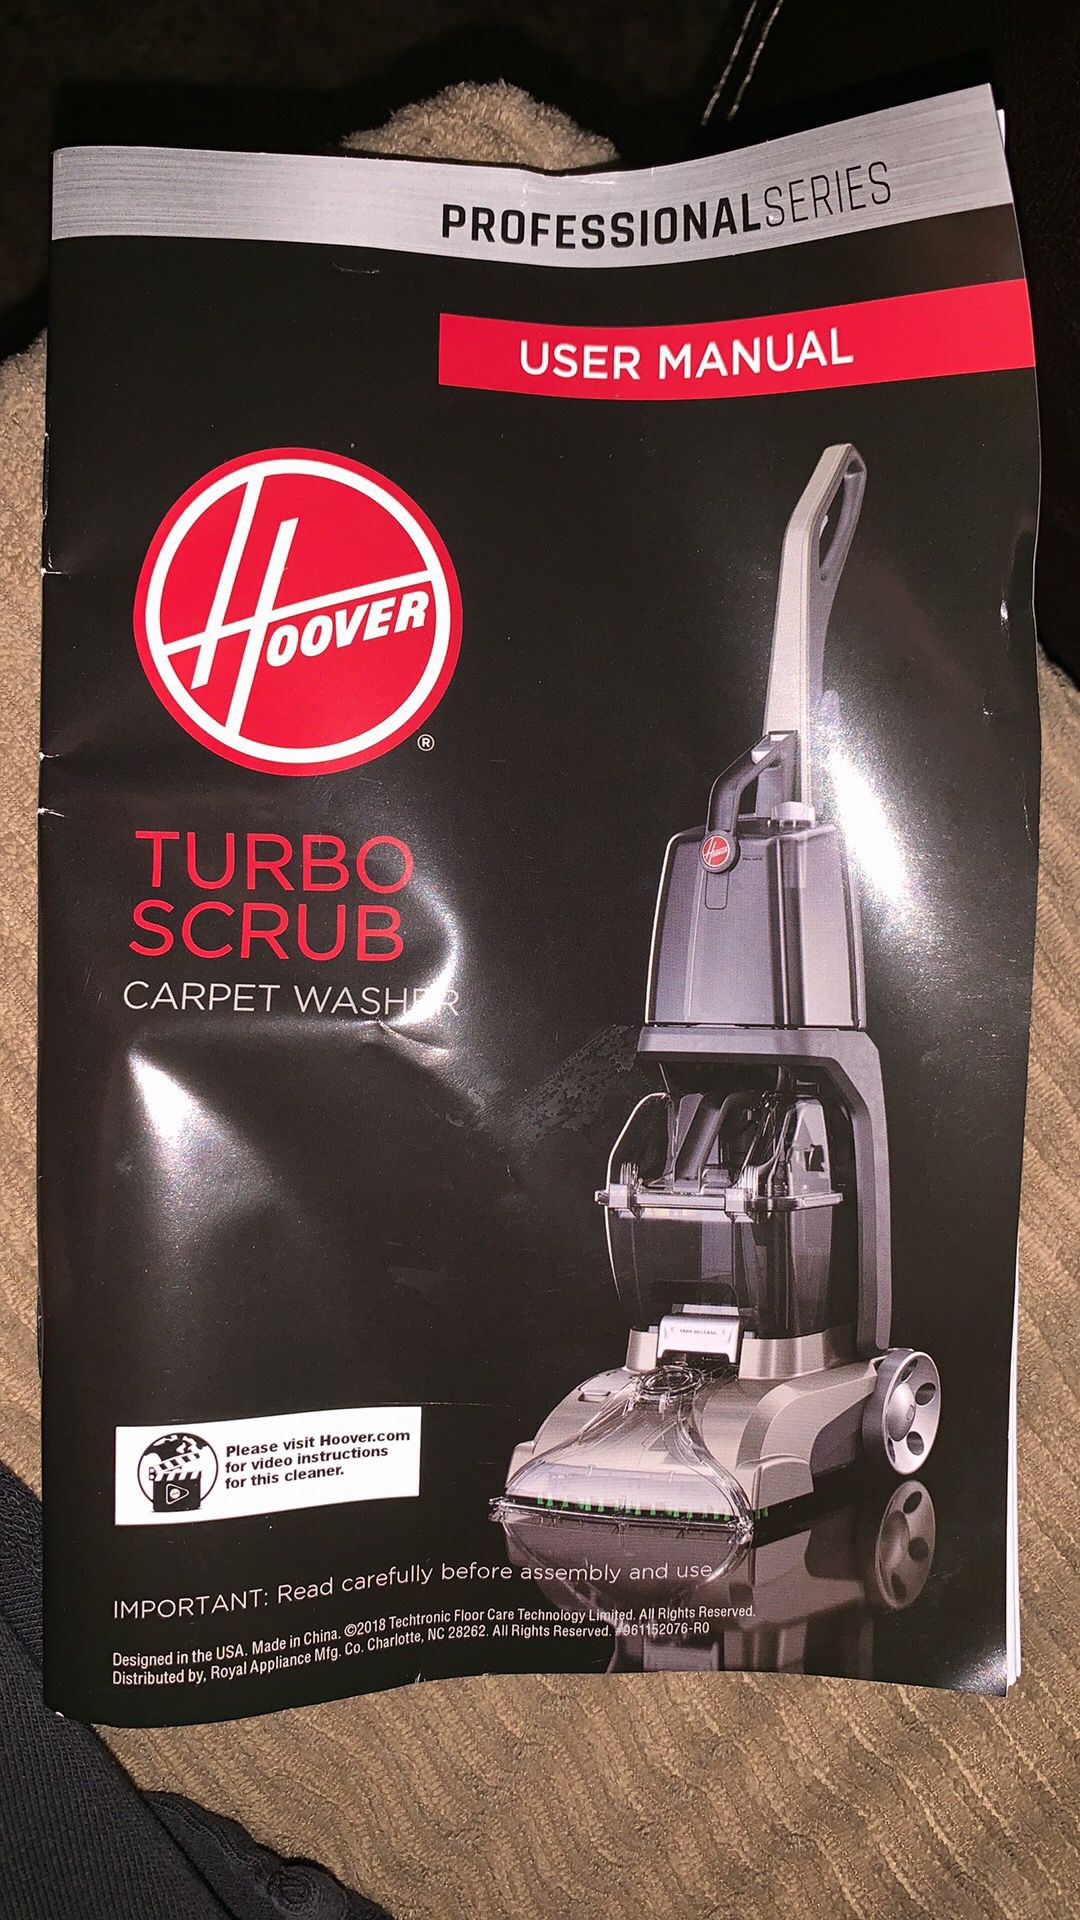 Hoover turbo scrub